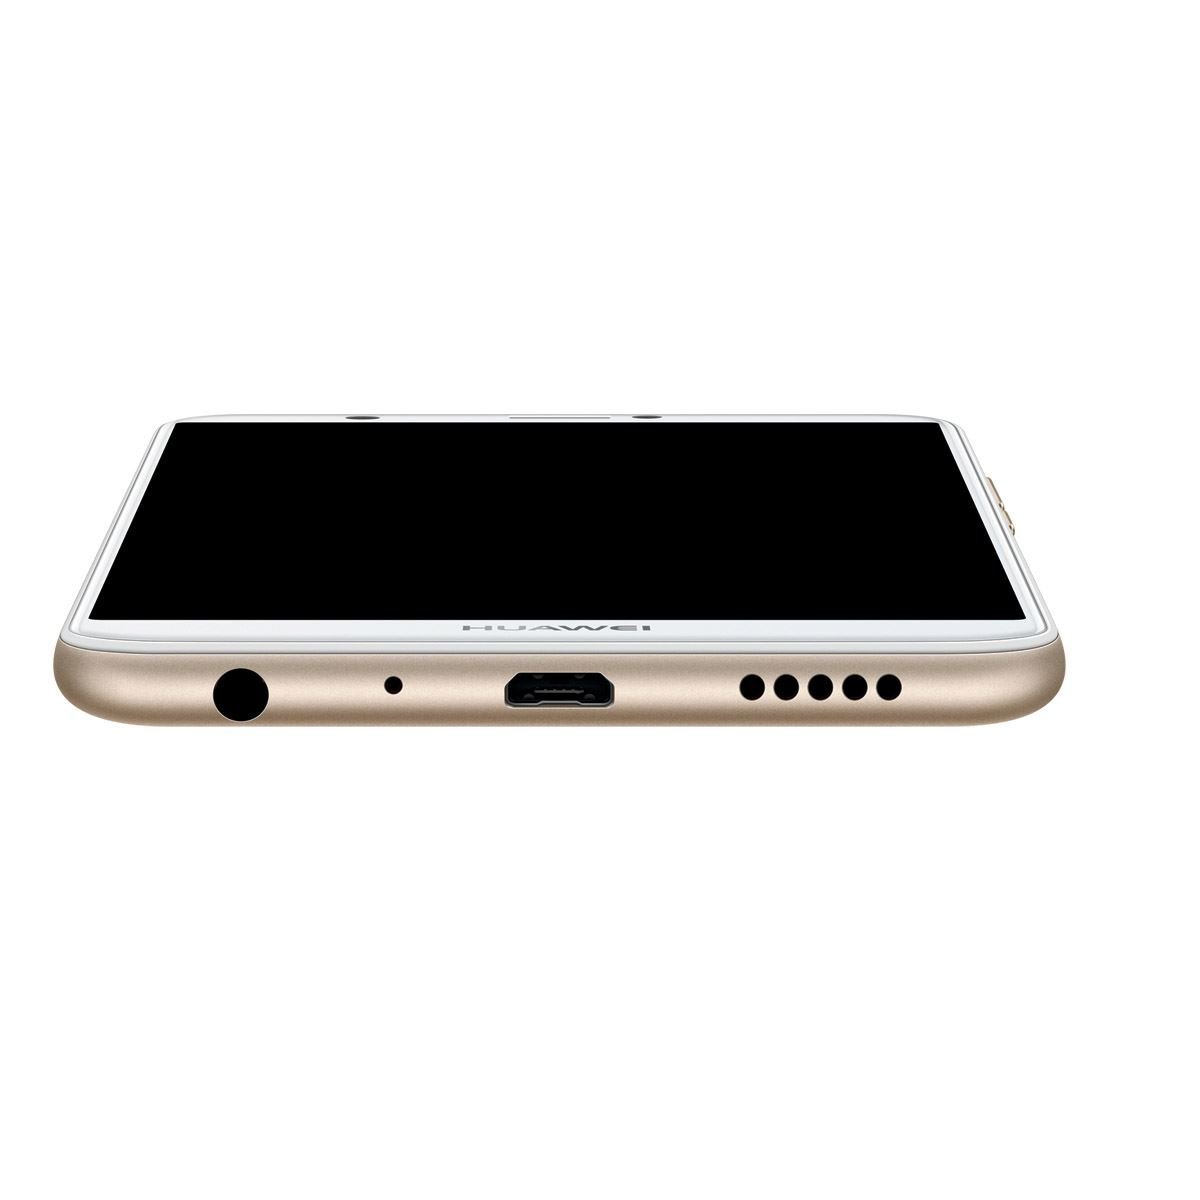 Celular Huawei P Smart Fig-Lx3 Color Dorado R9 (Telcel)